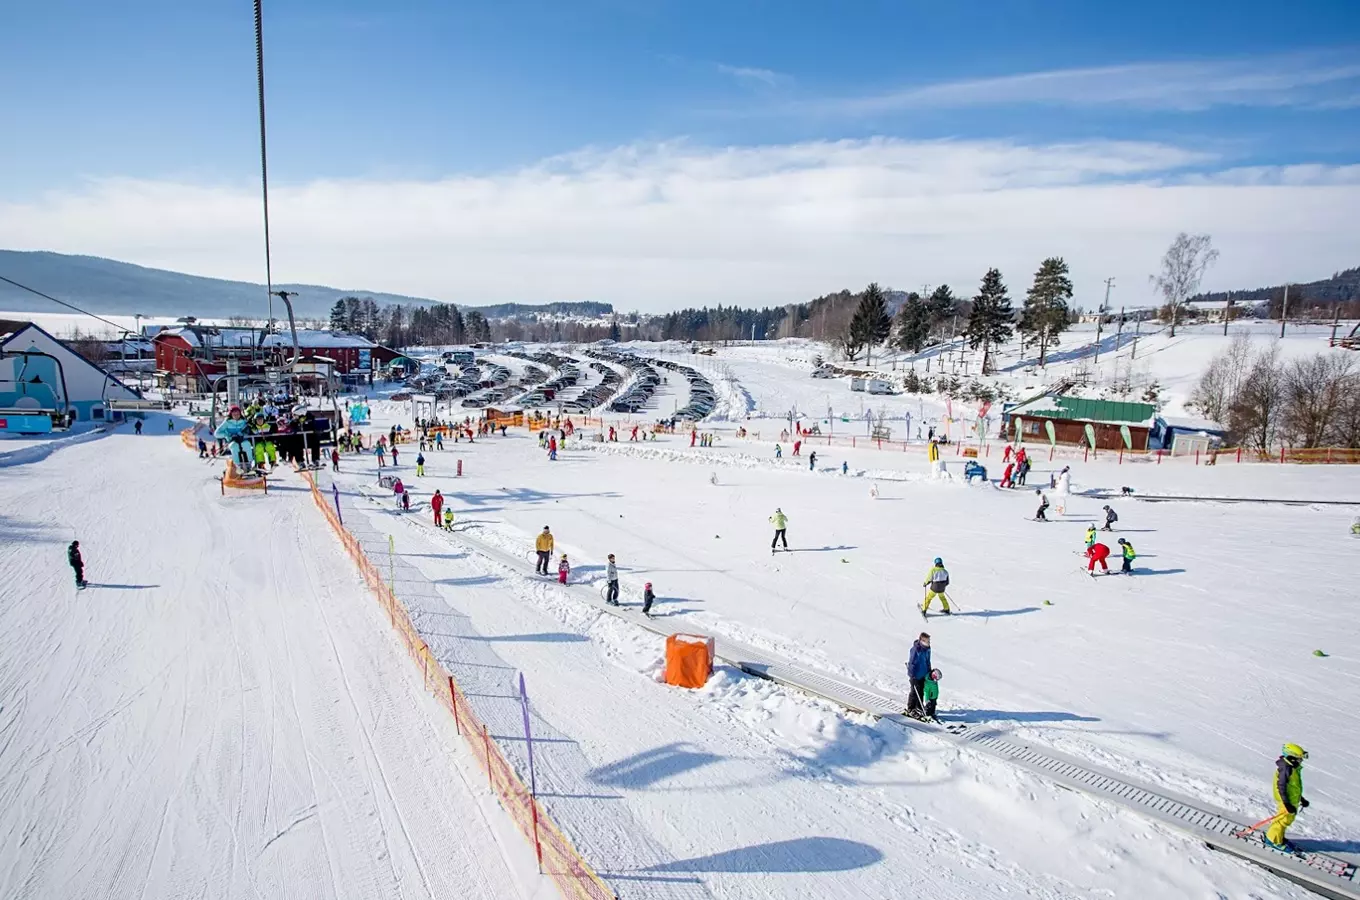 Užijte si pohodové lyžování ve Skiareálu Lipno – rodiny se letos zalyžují o víkendu levněji